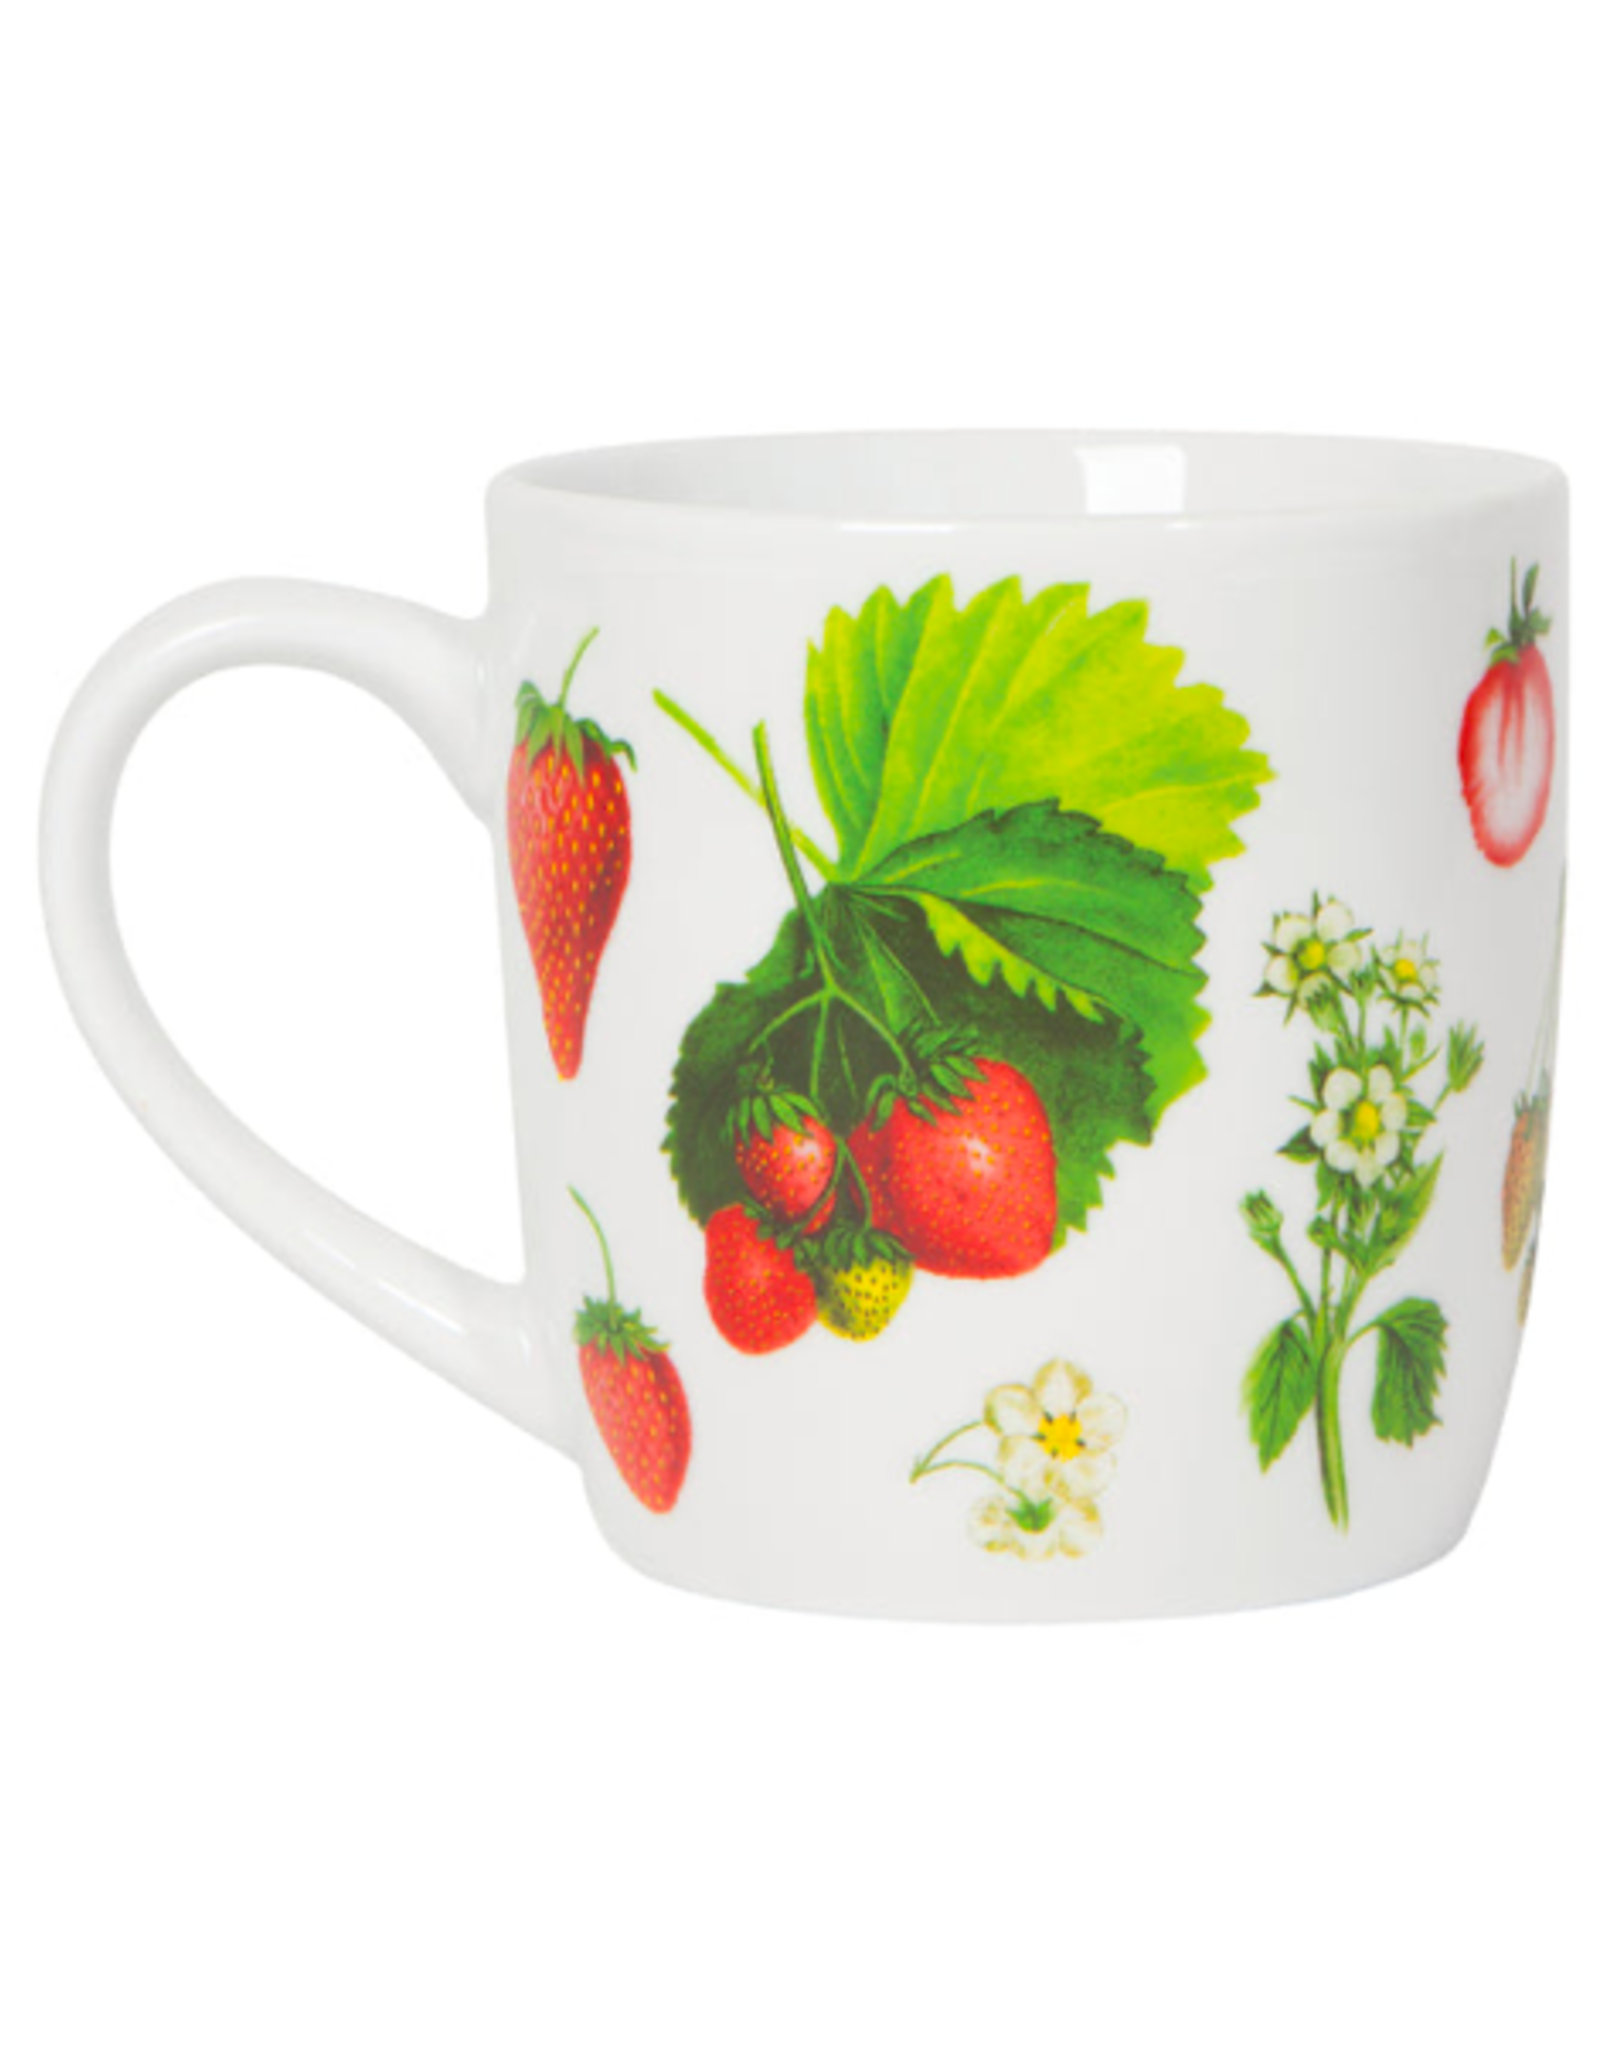 TIMCo DCA - Mug / Strawberries, 12oz